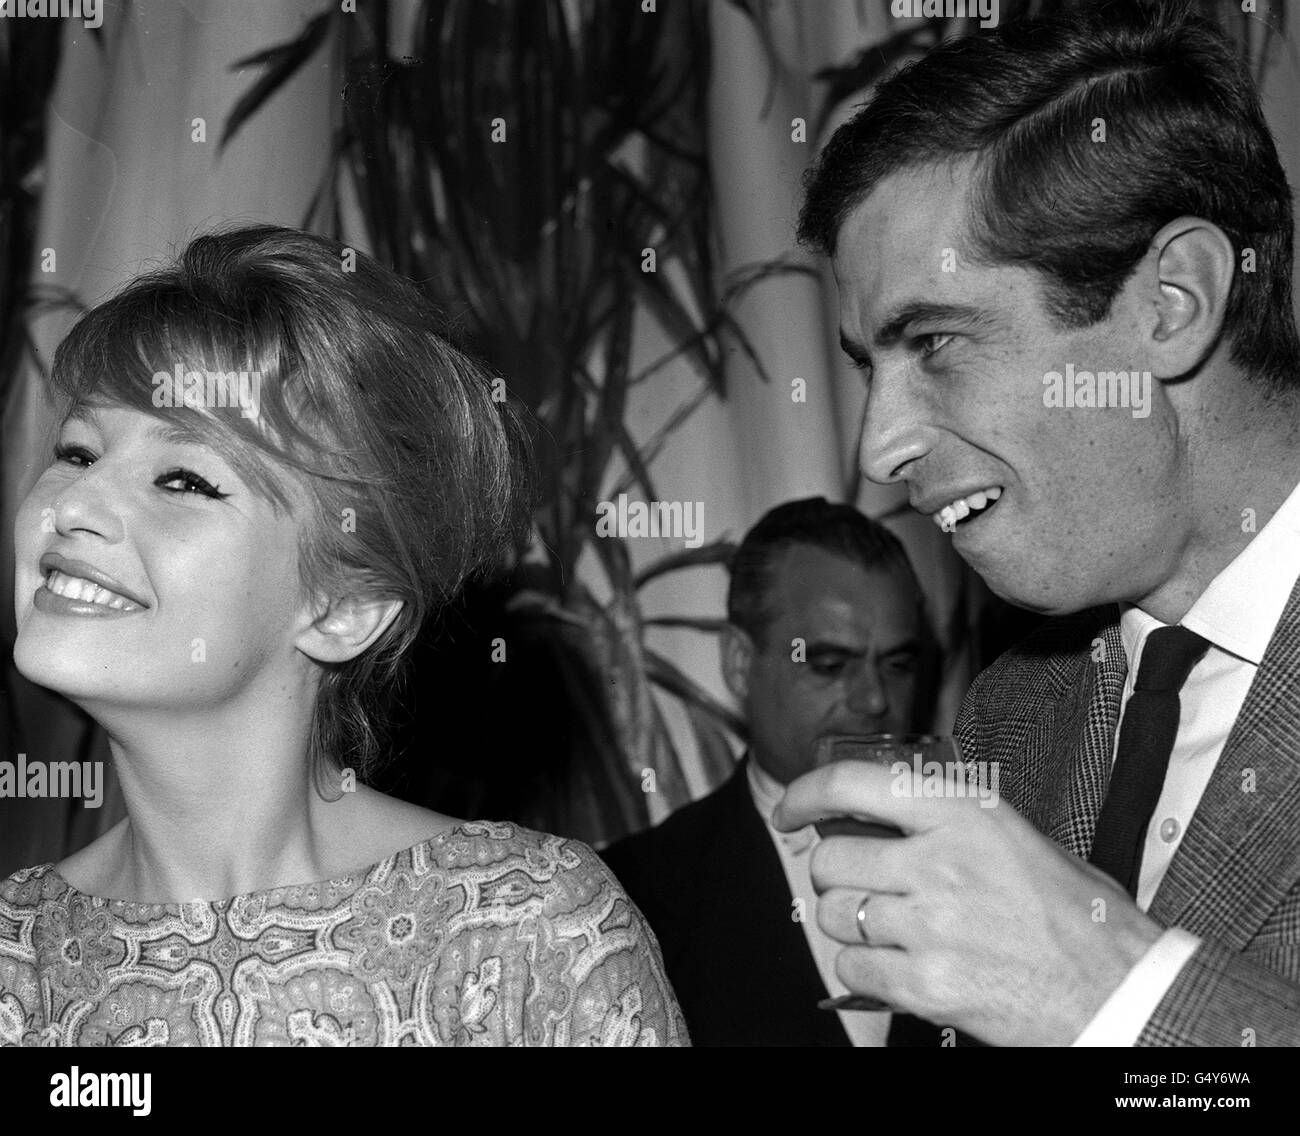 PA photo 14/12/1958 le réalisateur Roger Vadim avec sa femme Annette Stroyberg, actrice danoise, au Savoy Hotel de Londres pendant un Réception donnée par le producteur de film Carl Foreman pour leur nouveau Prochain film "les armes de Navarone" Banque D'Images